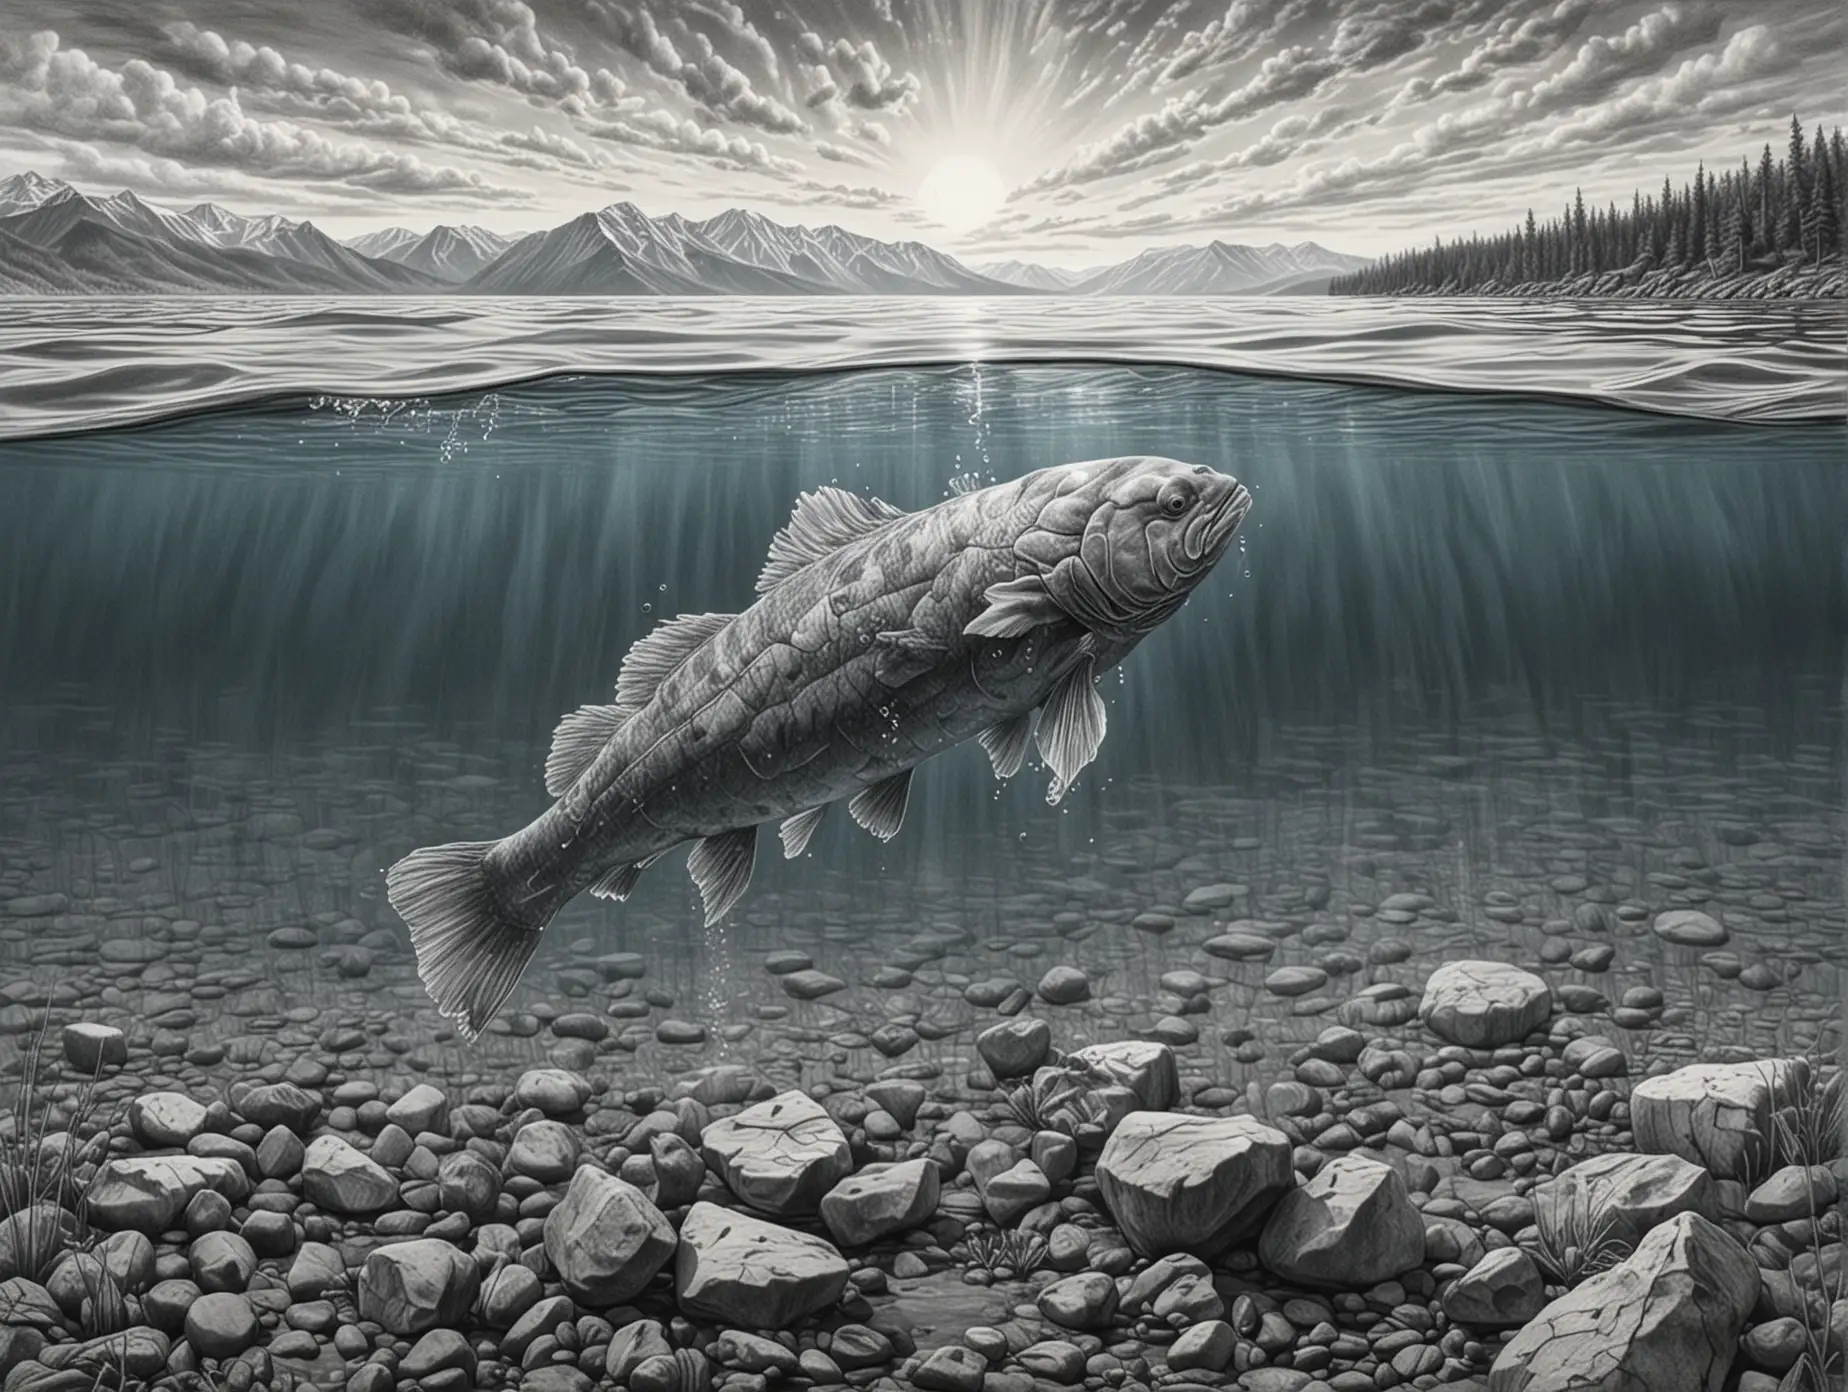 реалистичный рисунок в стиле карандашной графики детализированный хариус в воде озера Байкал